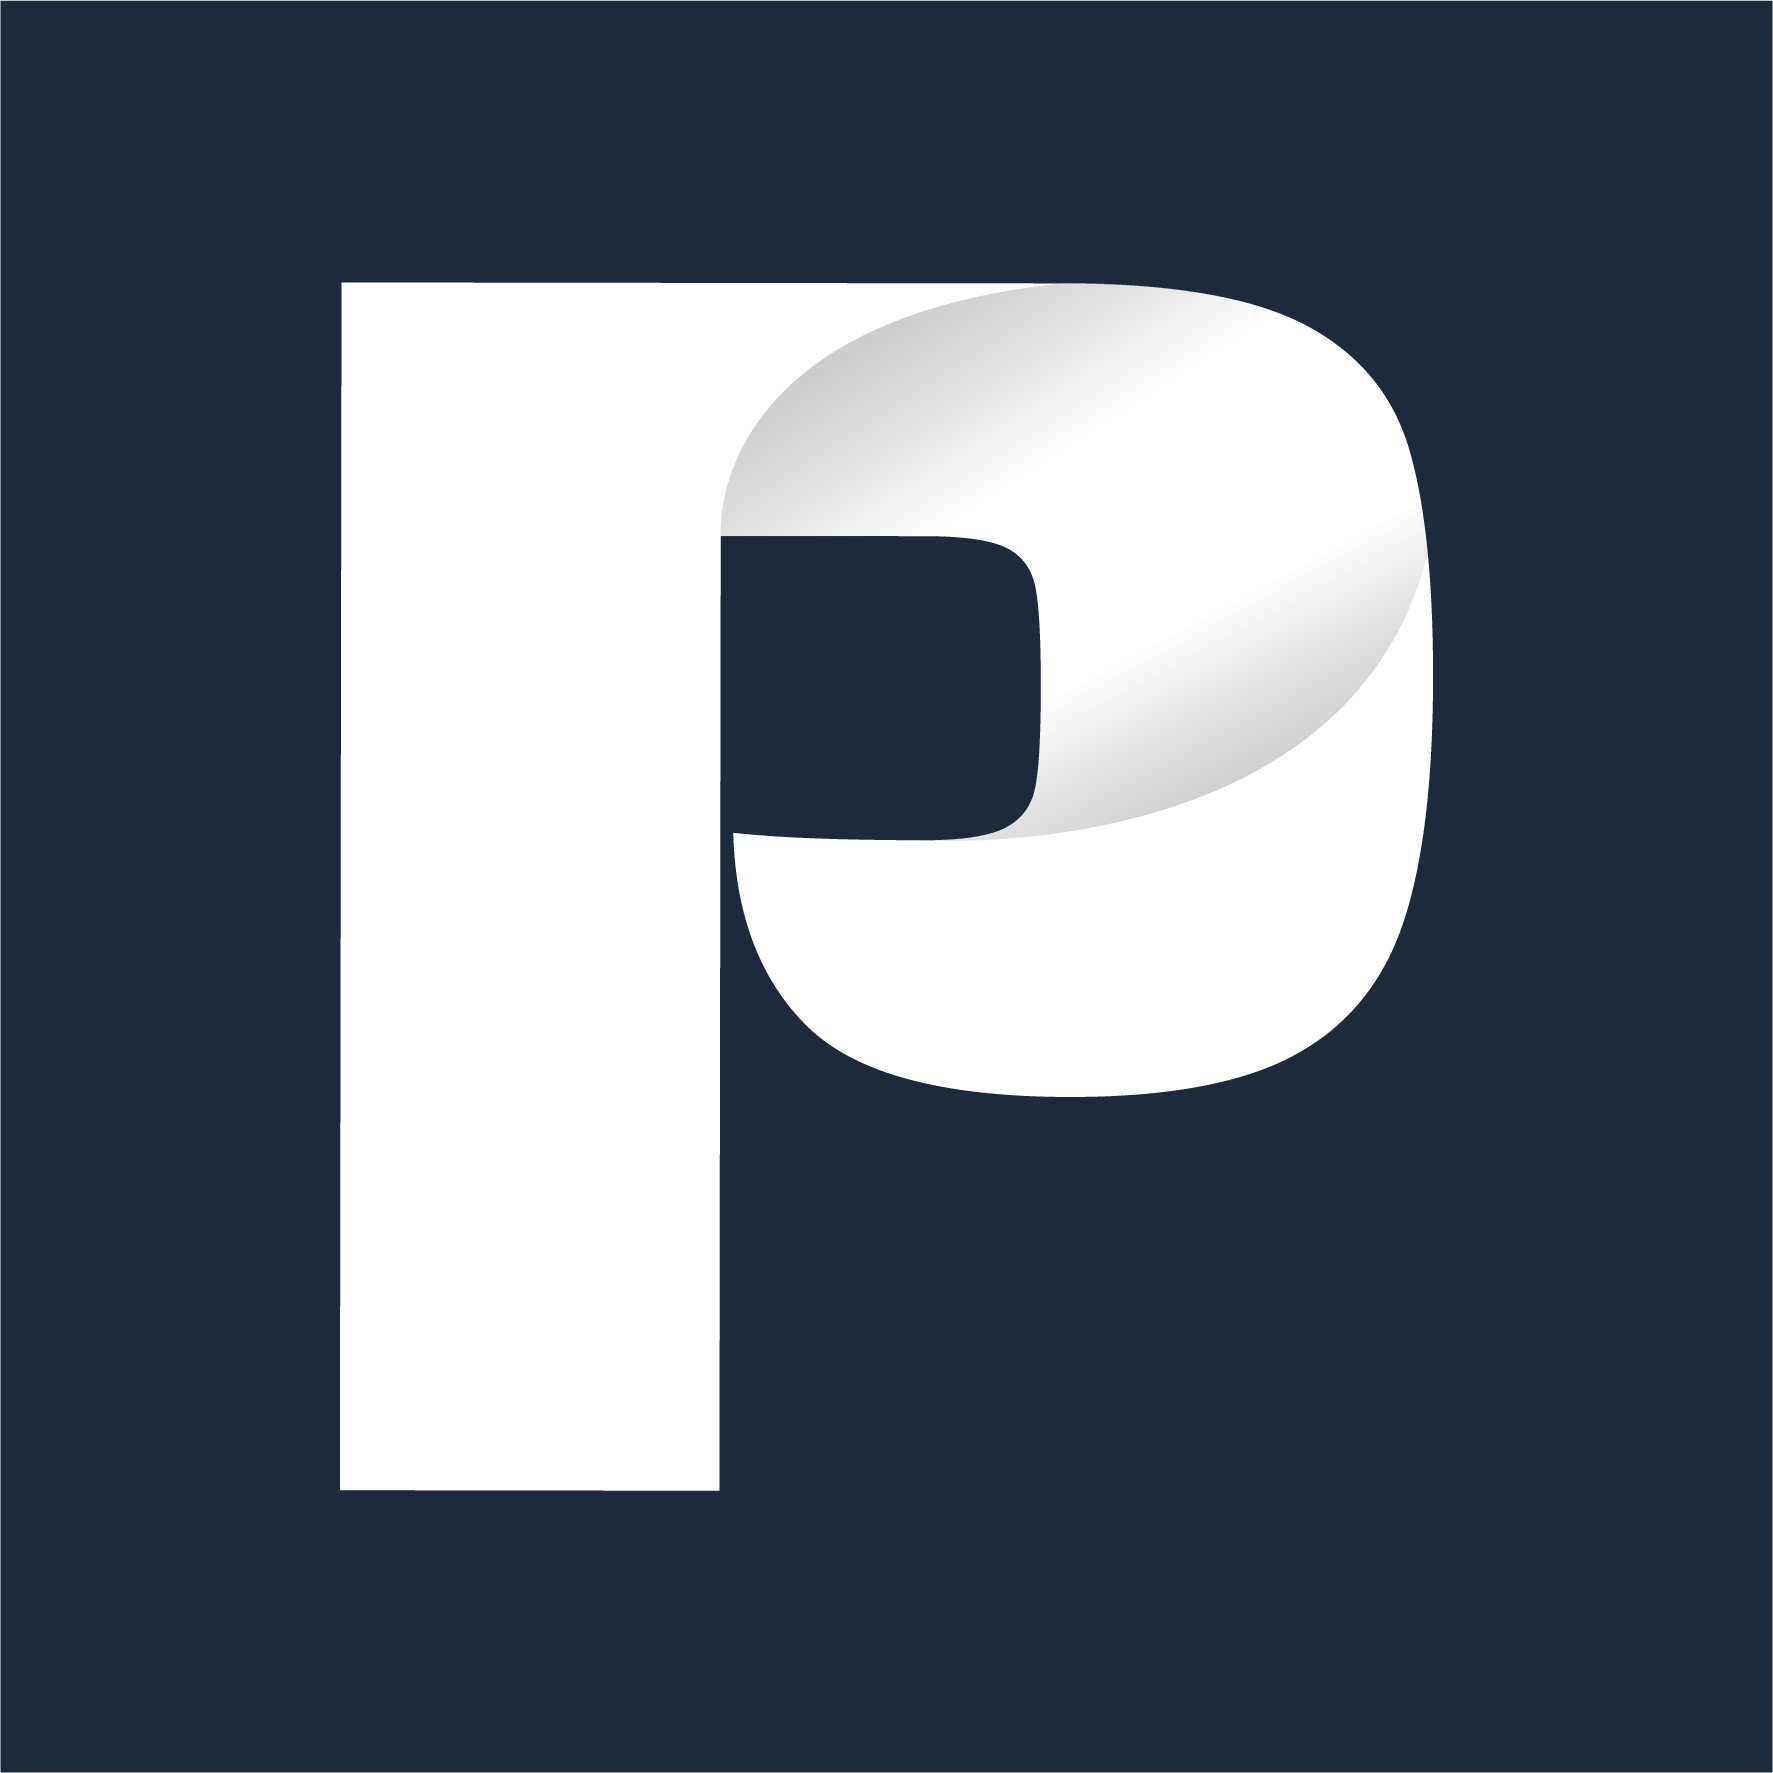 PAIZA Logo